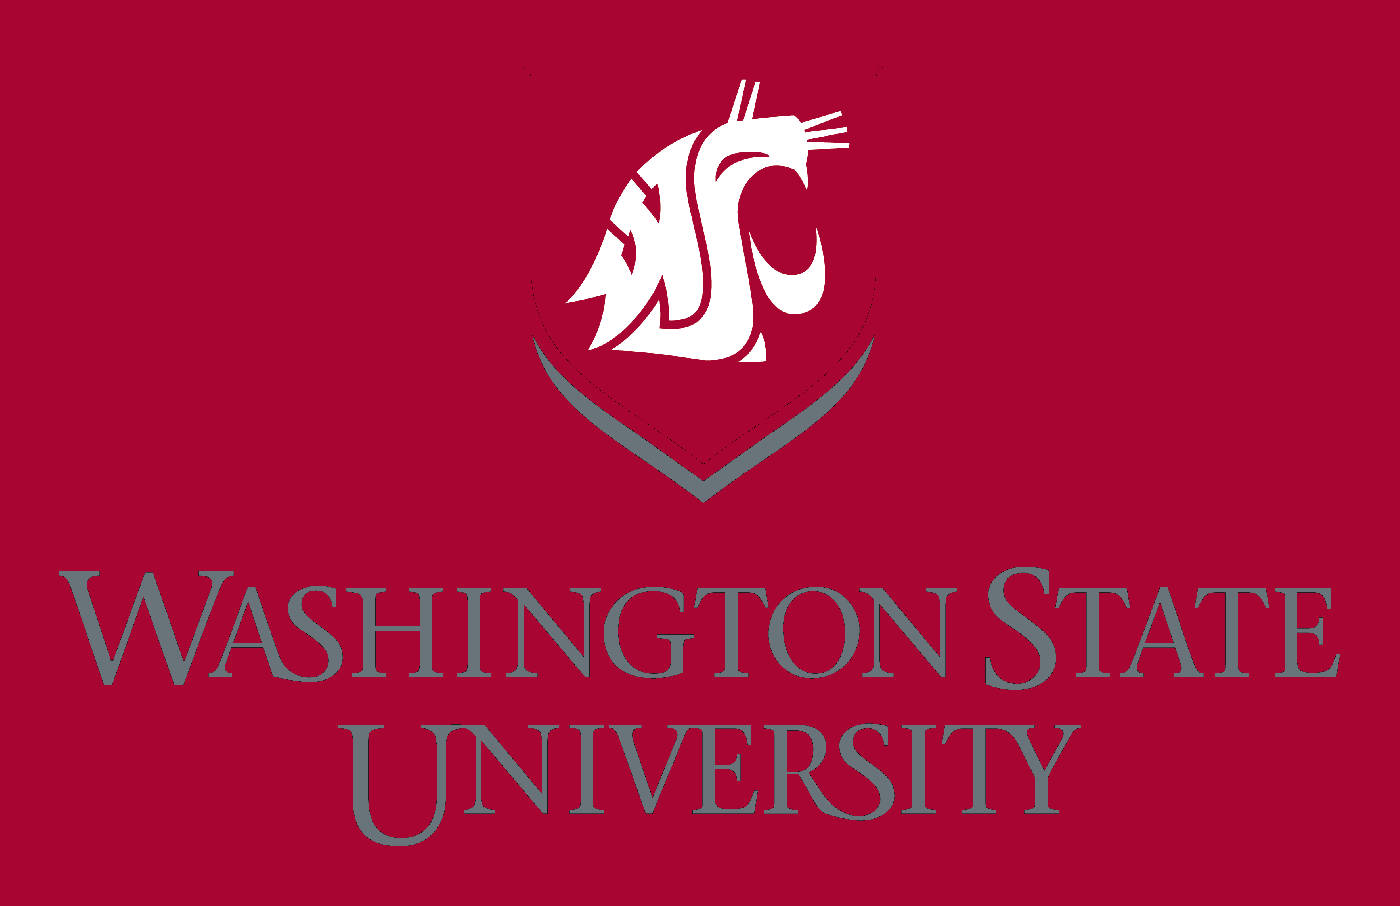 Logode La Universidad Estatal De Washington En Color Rojo Para Escritorio. Fondo de pantalla